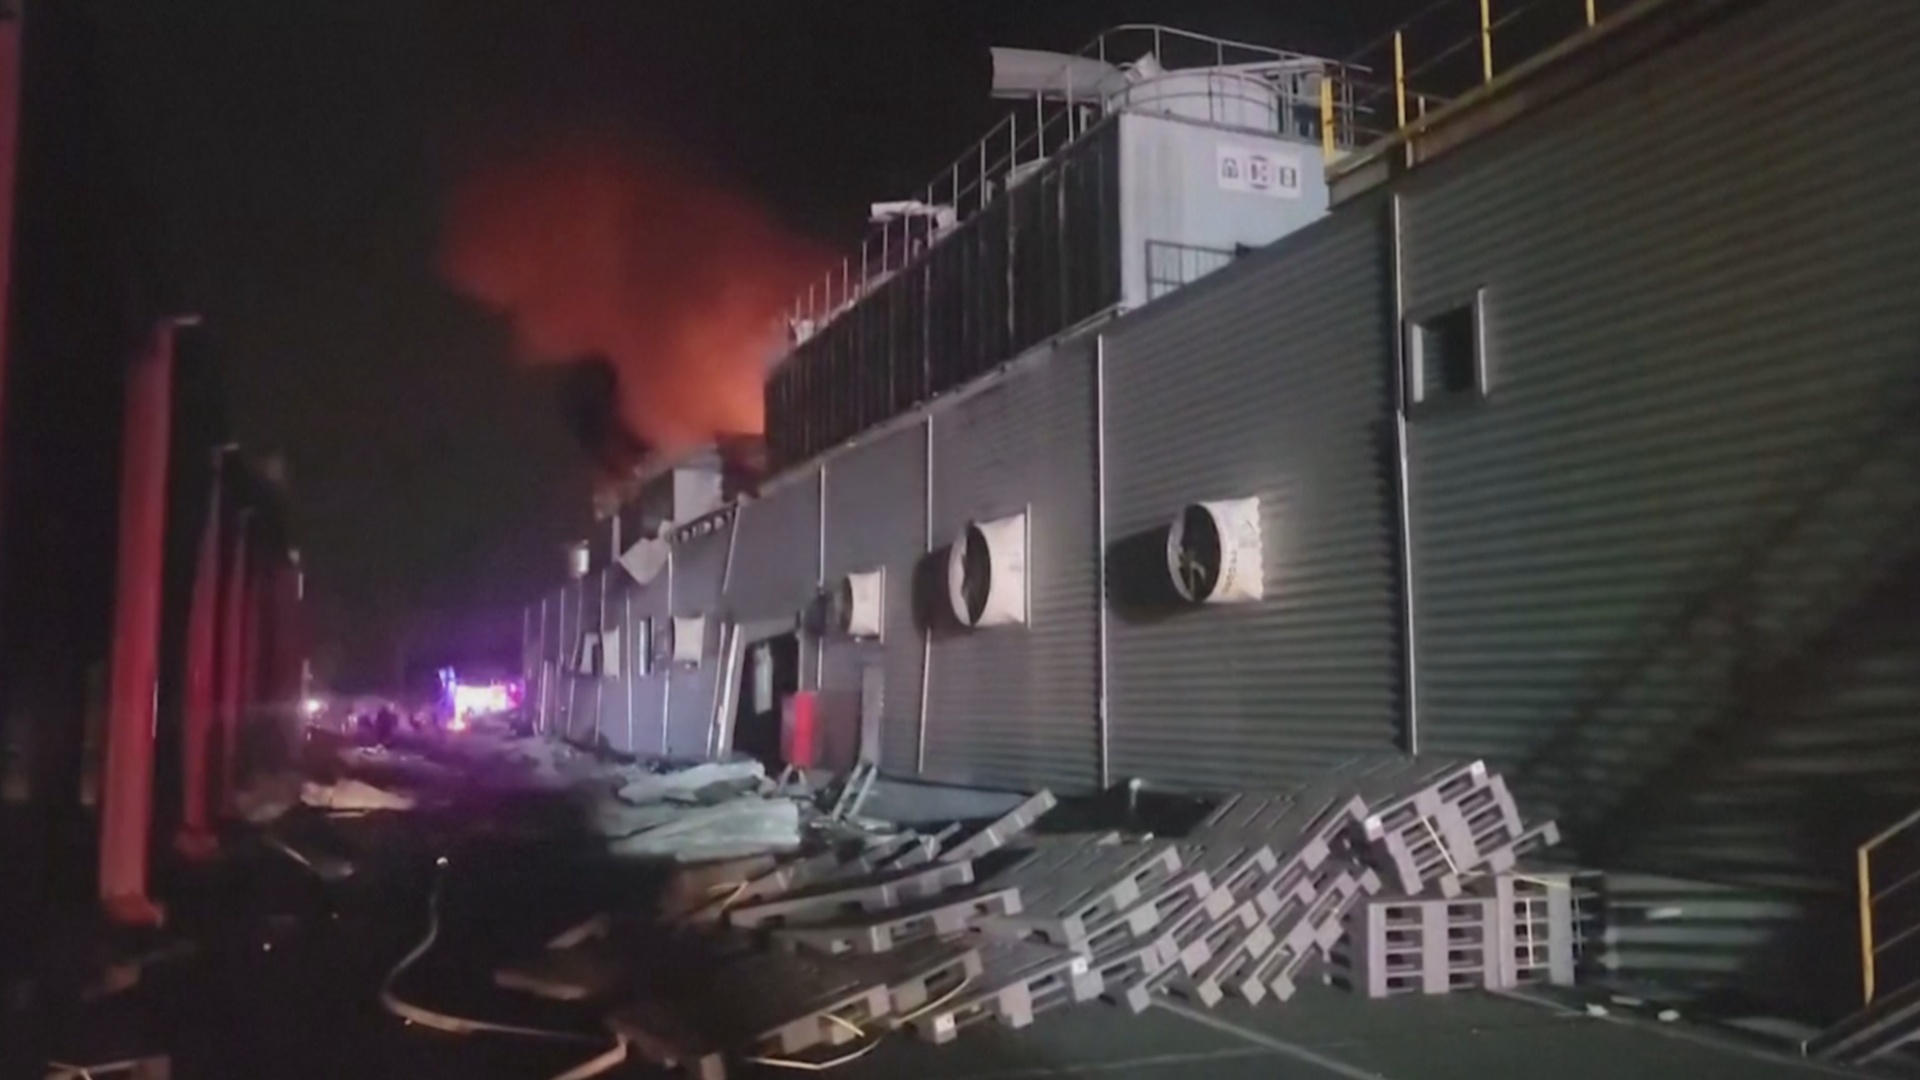 Пожар и взрывы на фабрике на Тайване: уже 9 погибших